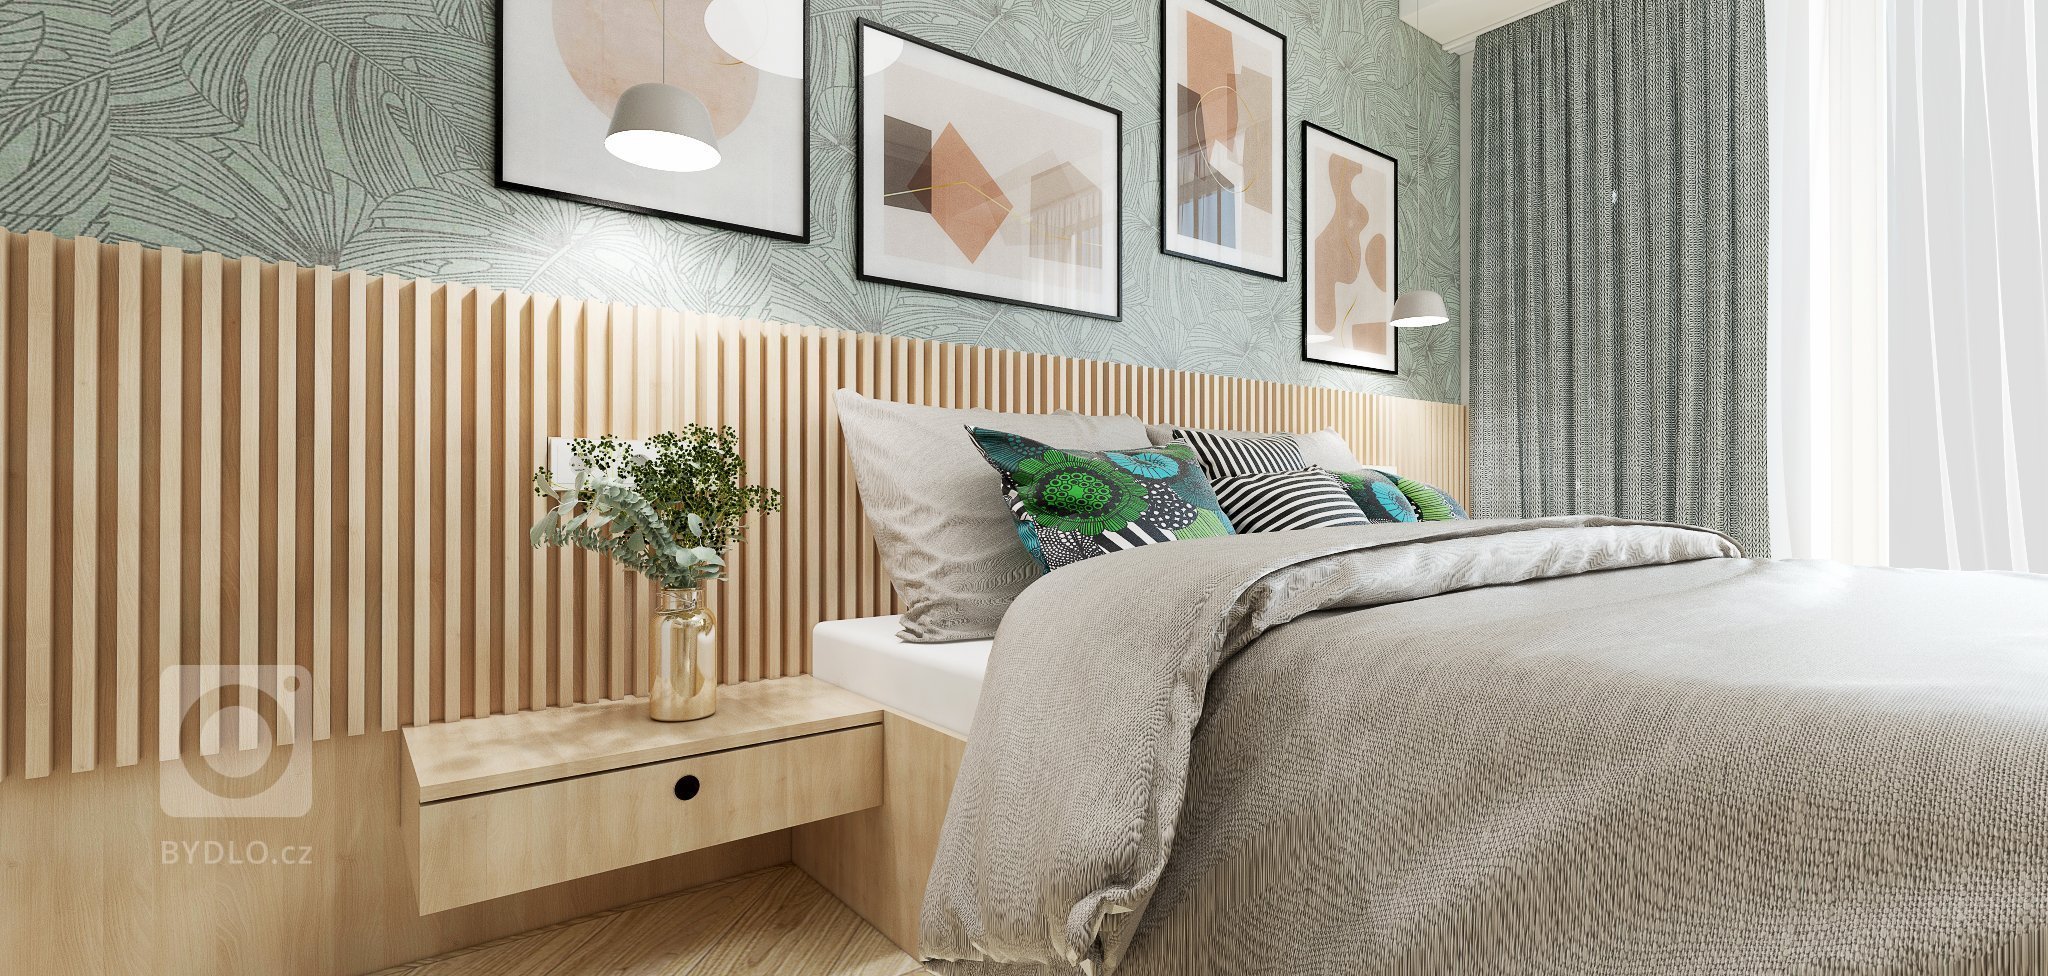 3-izbový byt v príjemnej kombinácii dreva a pastelových farieb
